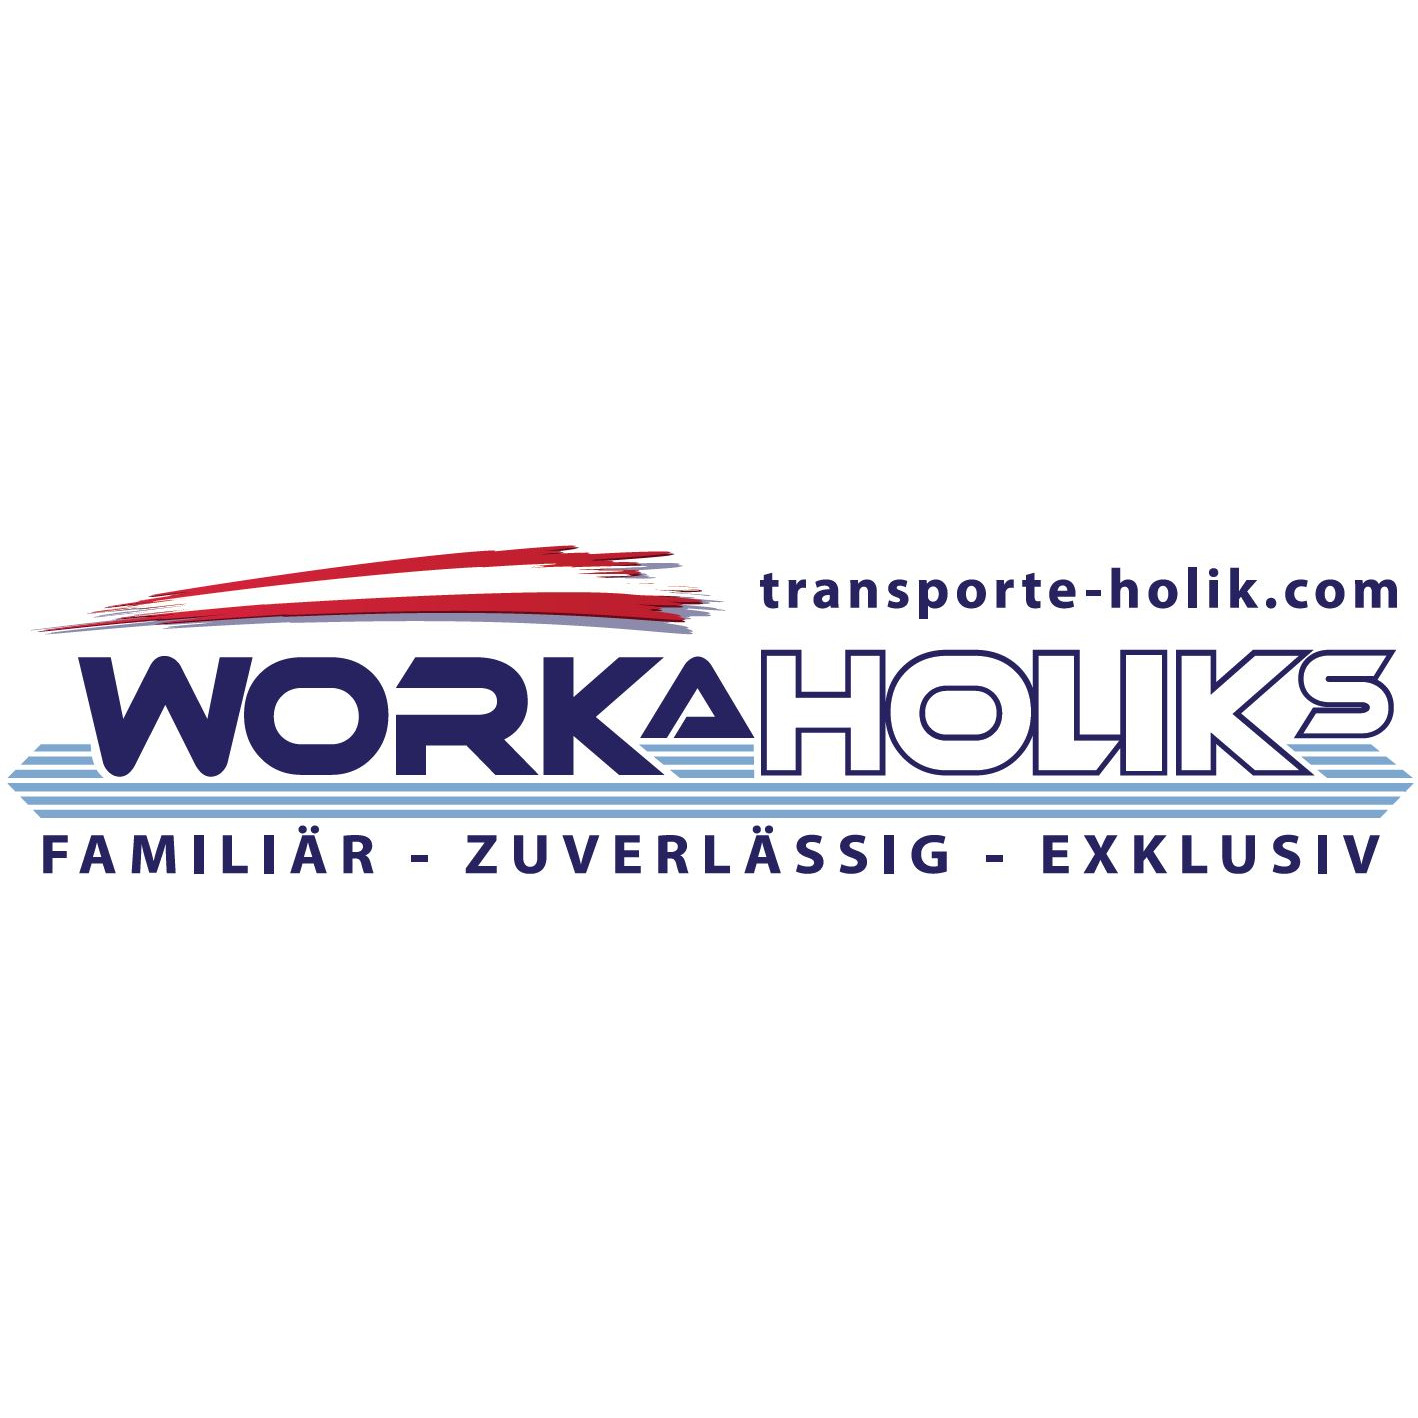 WORKAHOLIKS – Internationale Transporte Markus Holik